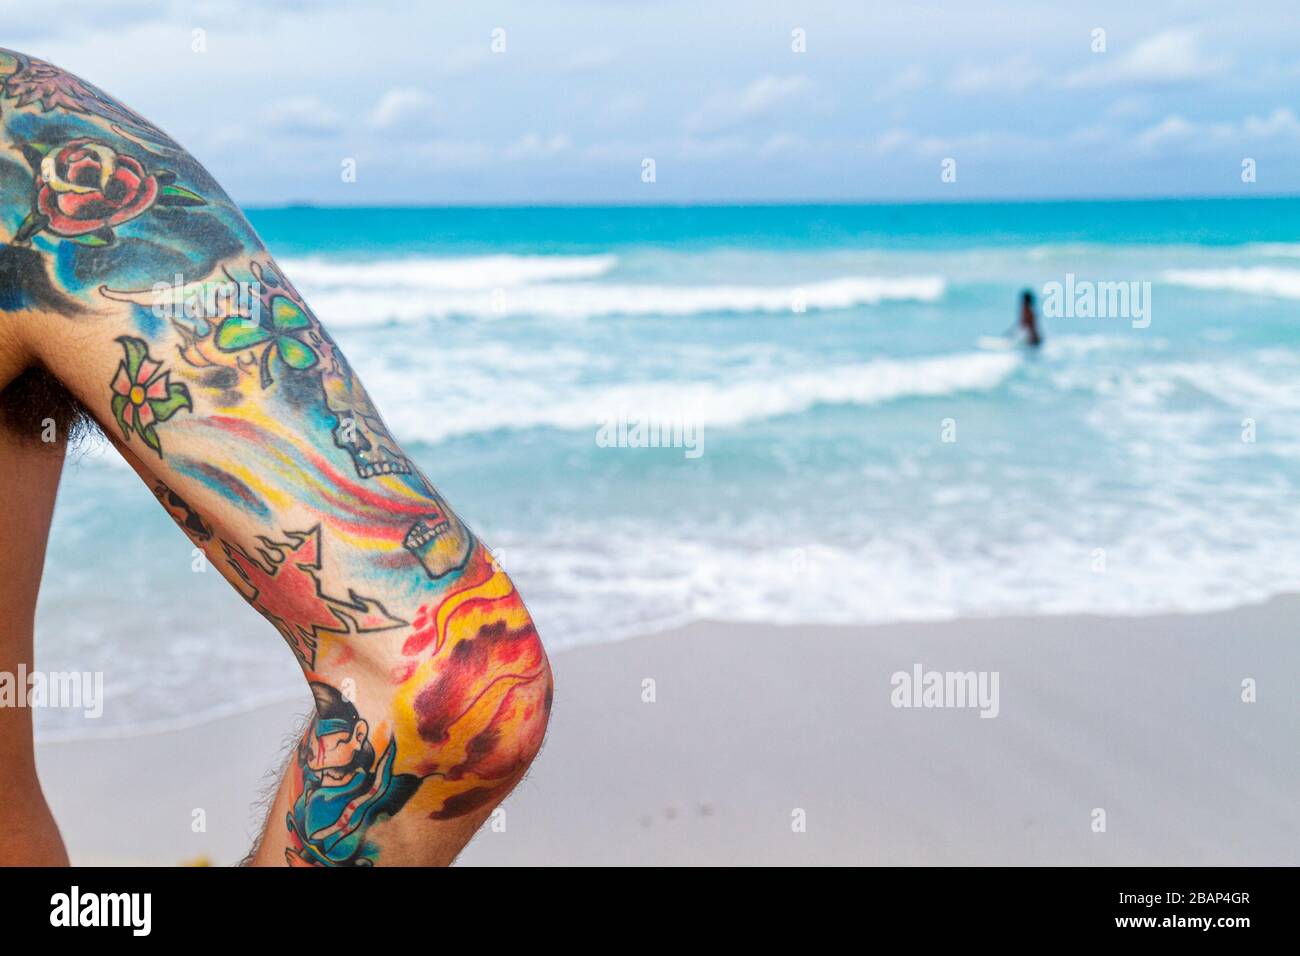 Miami Beach Florida,Oceano Atlantico,acqua,riva,surf,uomo uomini maschio adulti,braccio,tatuaggio,tatuaggi,colorato,onde,acqua,FL110611012 Foto Stock